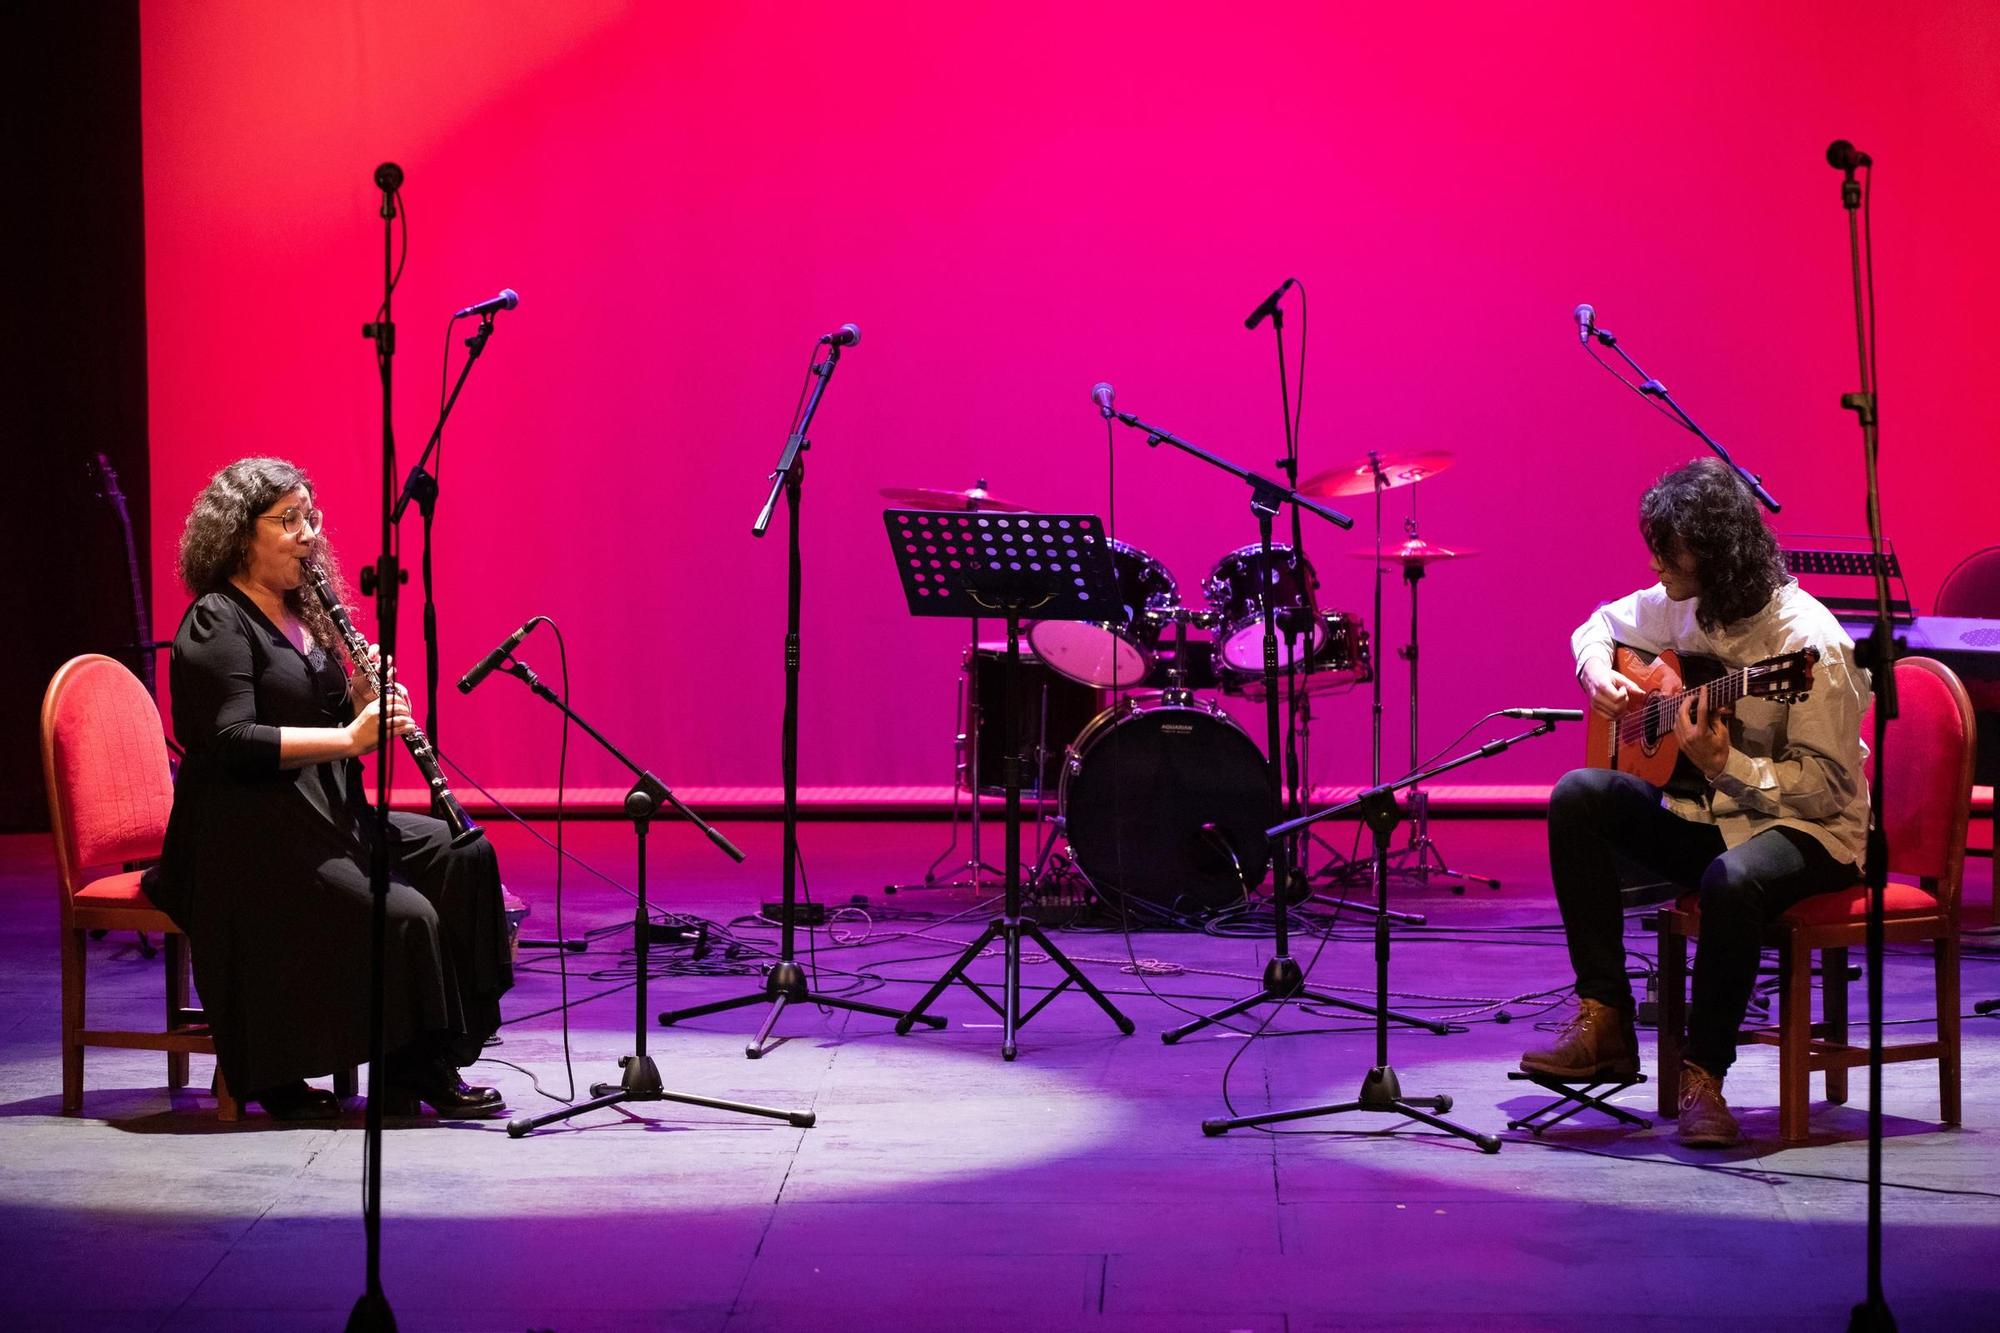 GALERÍA | Las mejores imágenes del espectáculo “Música Sin barreras” en el Teatro Principal de Zamora